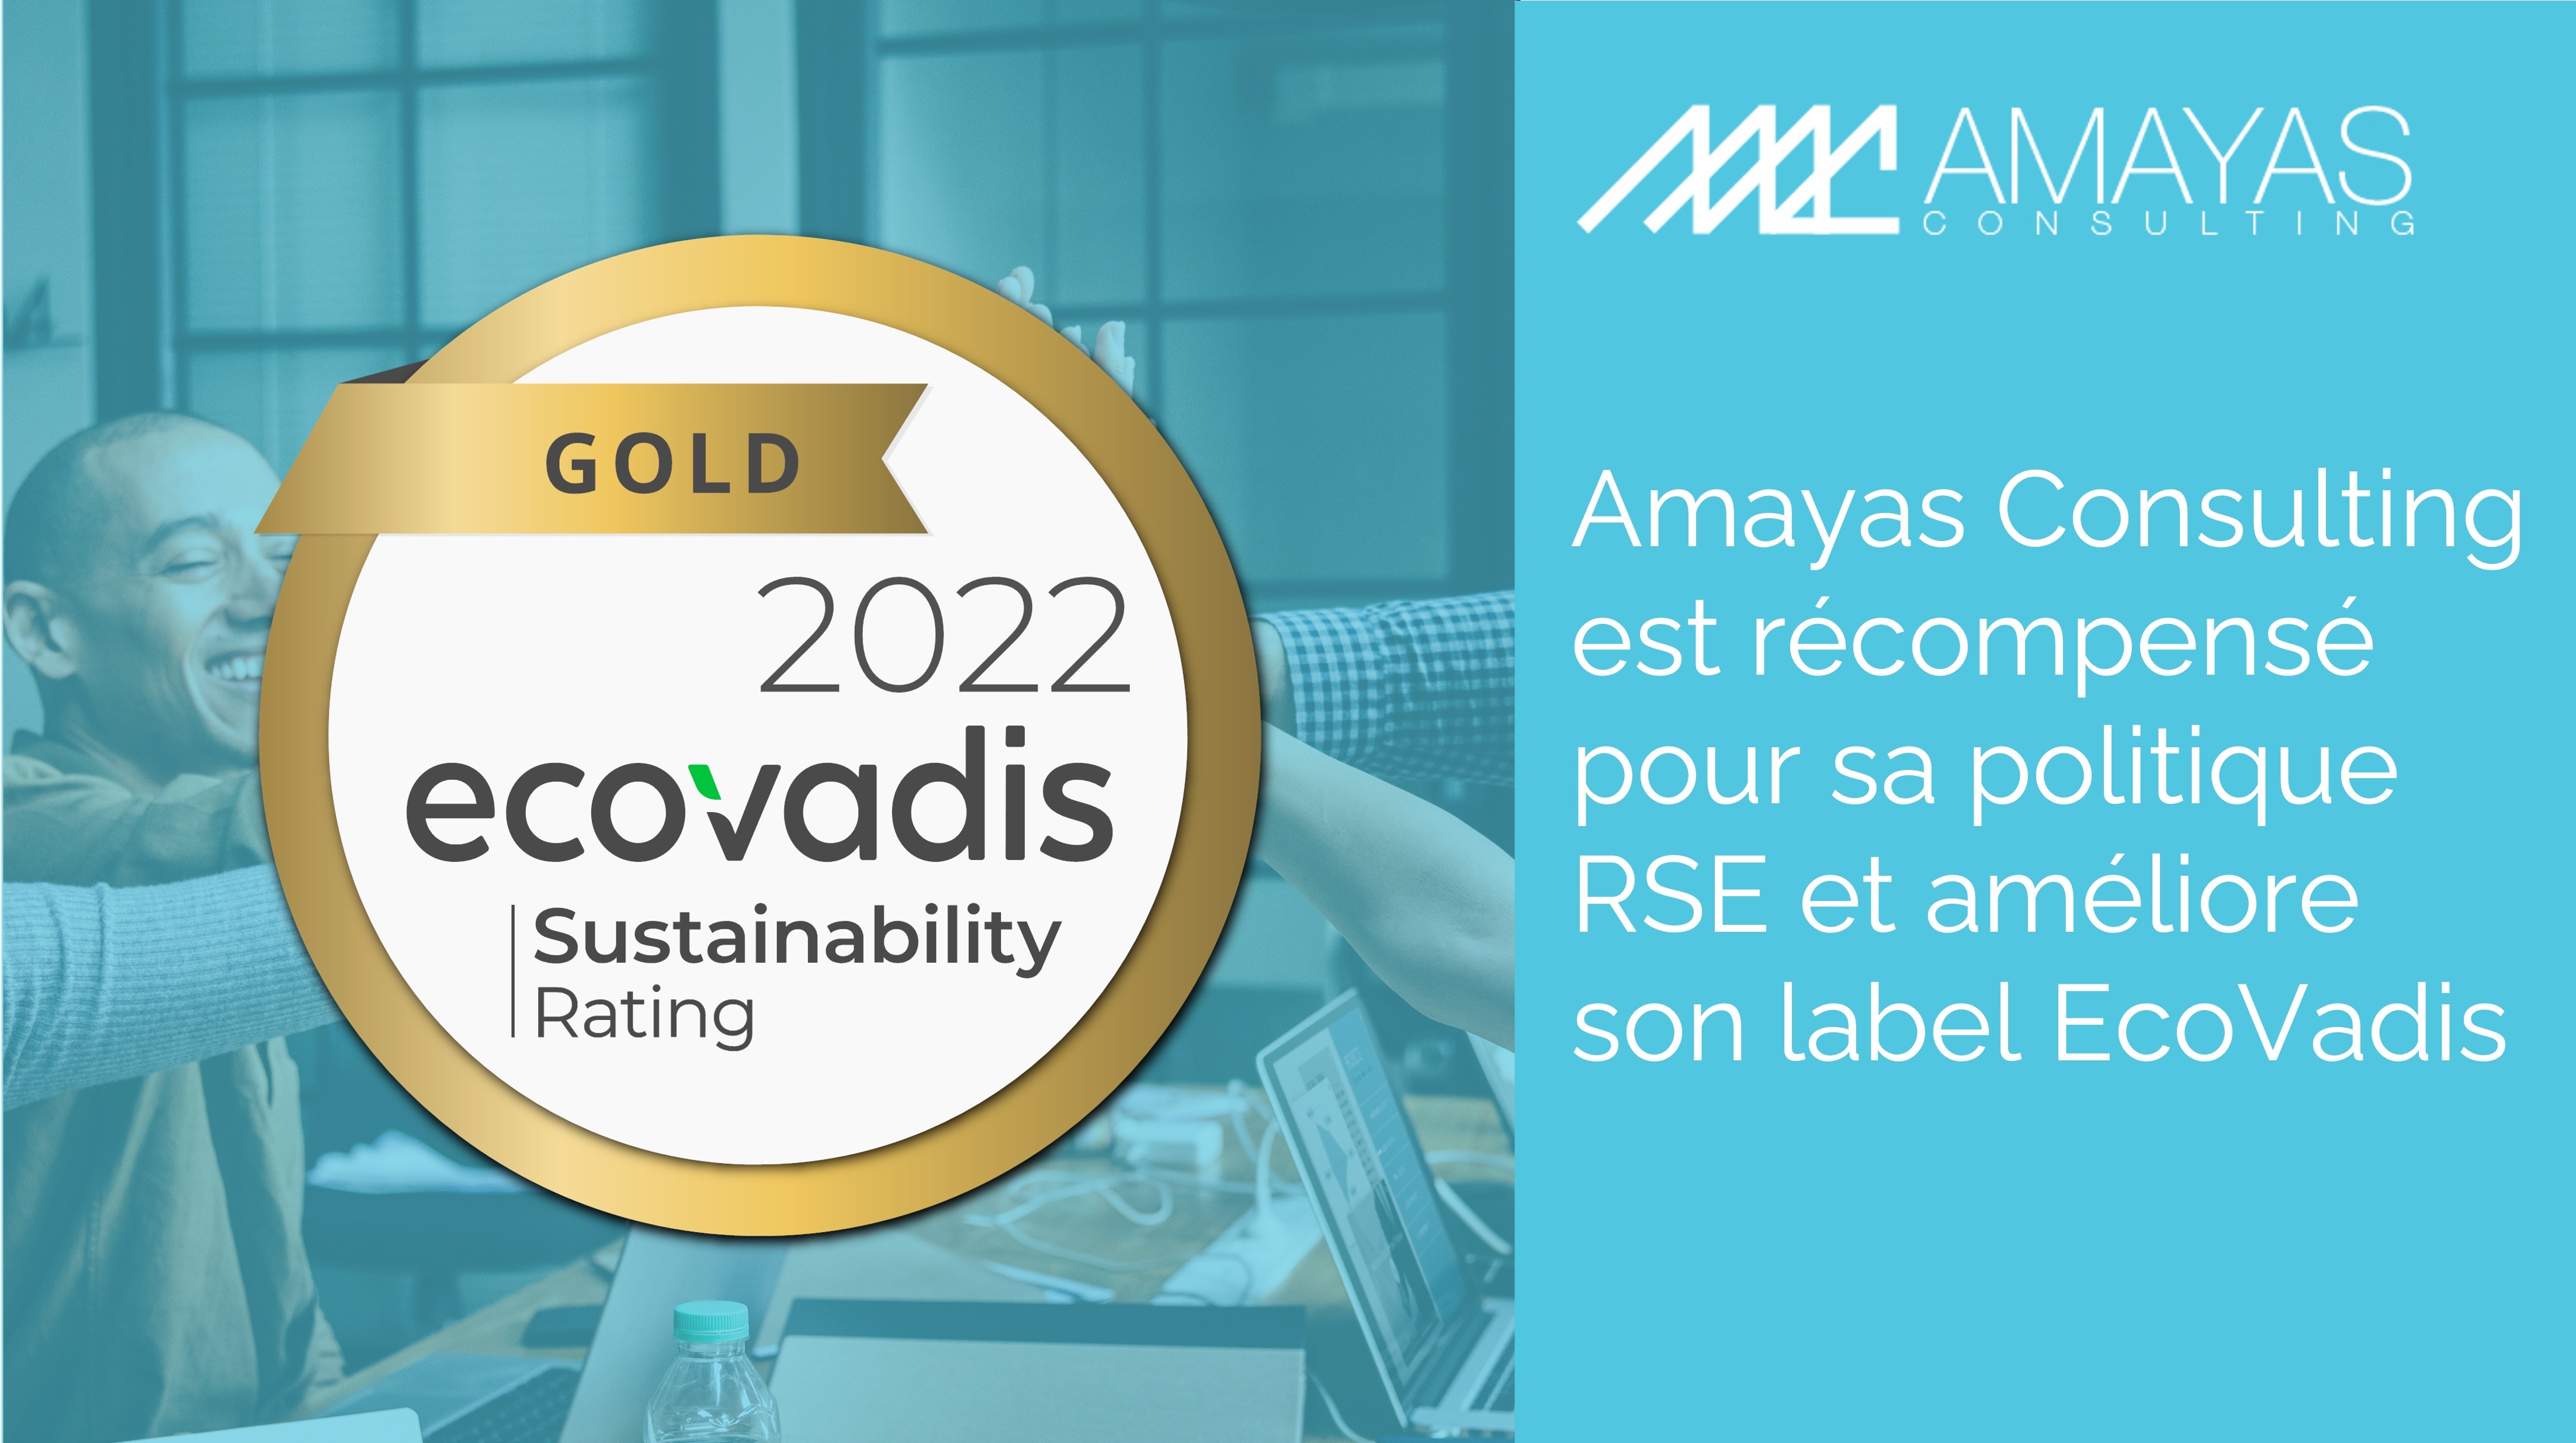 Amayas Consulting est récompensé pour sa politique RSE !